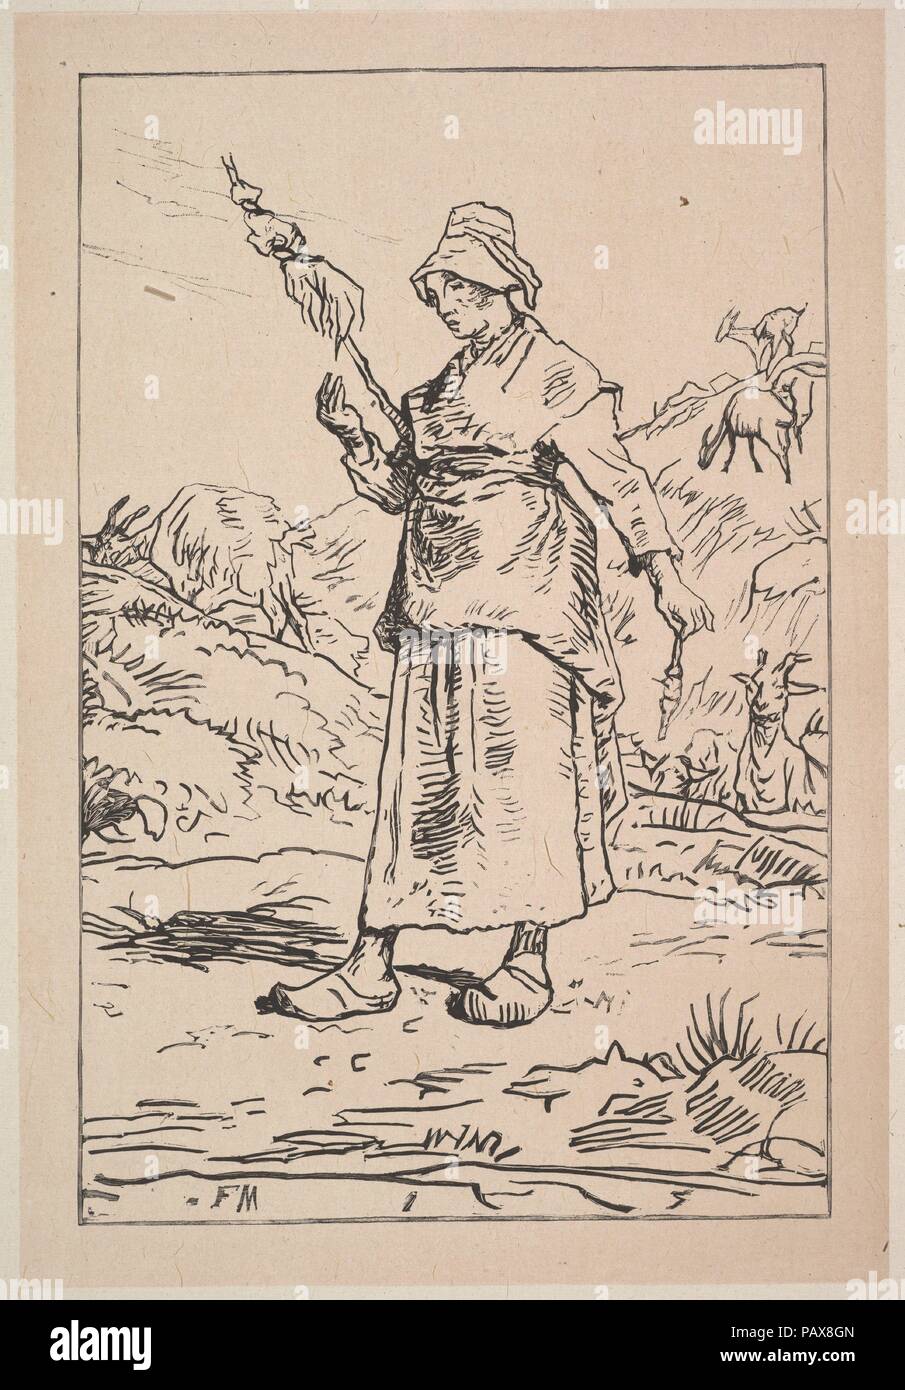 Spinner de l'Auvergne. Artiste : Après Jean-François Millet (Gruchy, français 1814-1875) Barbizon. Dimensions : Image : 8 5/8 x 5 7/8 in. (21,9 × 15 cm) : 9 Feuille 5/8 × 12 1/16 in. (24,4 × 30,6 cm). Date : 1830-99. Musée : Metropolitan Museum of Art, New York, USA. Banque D'Images